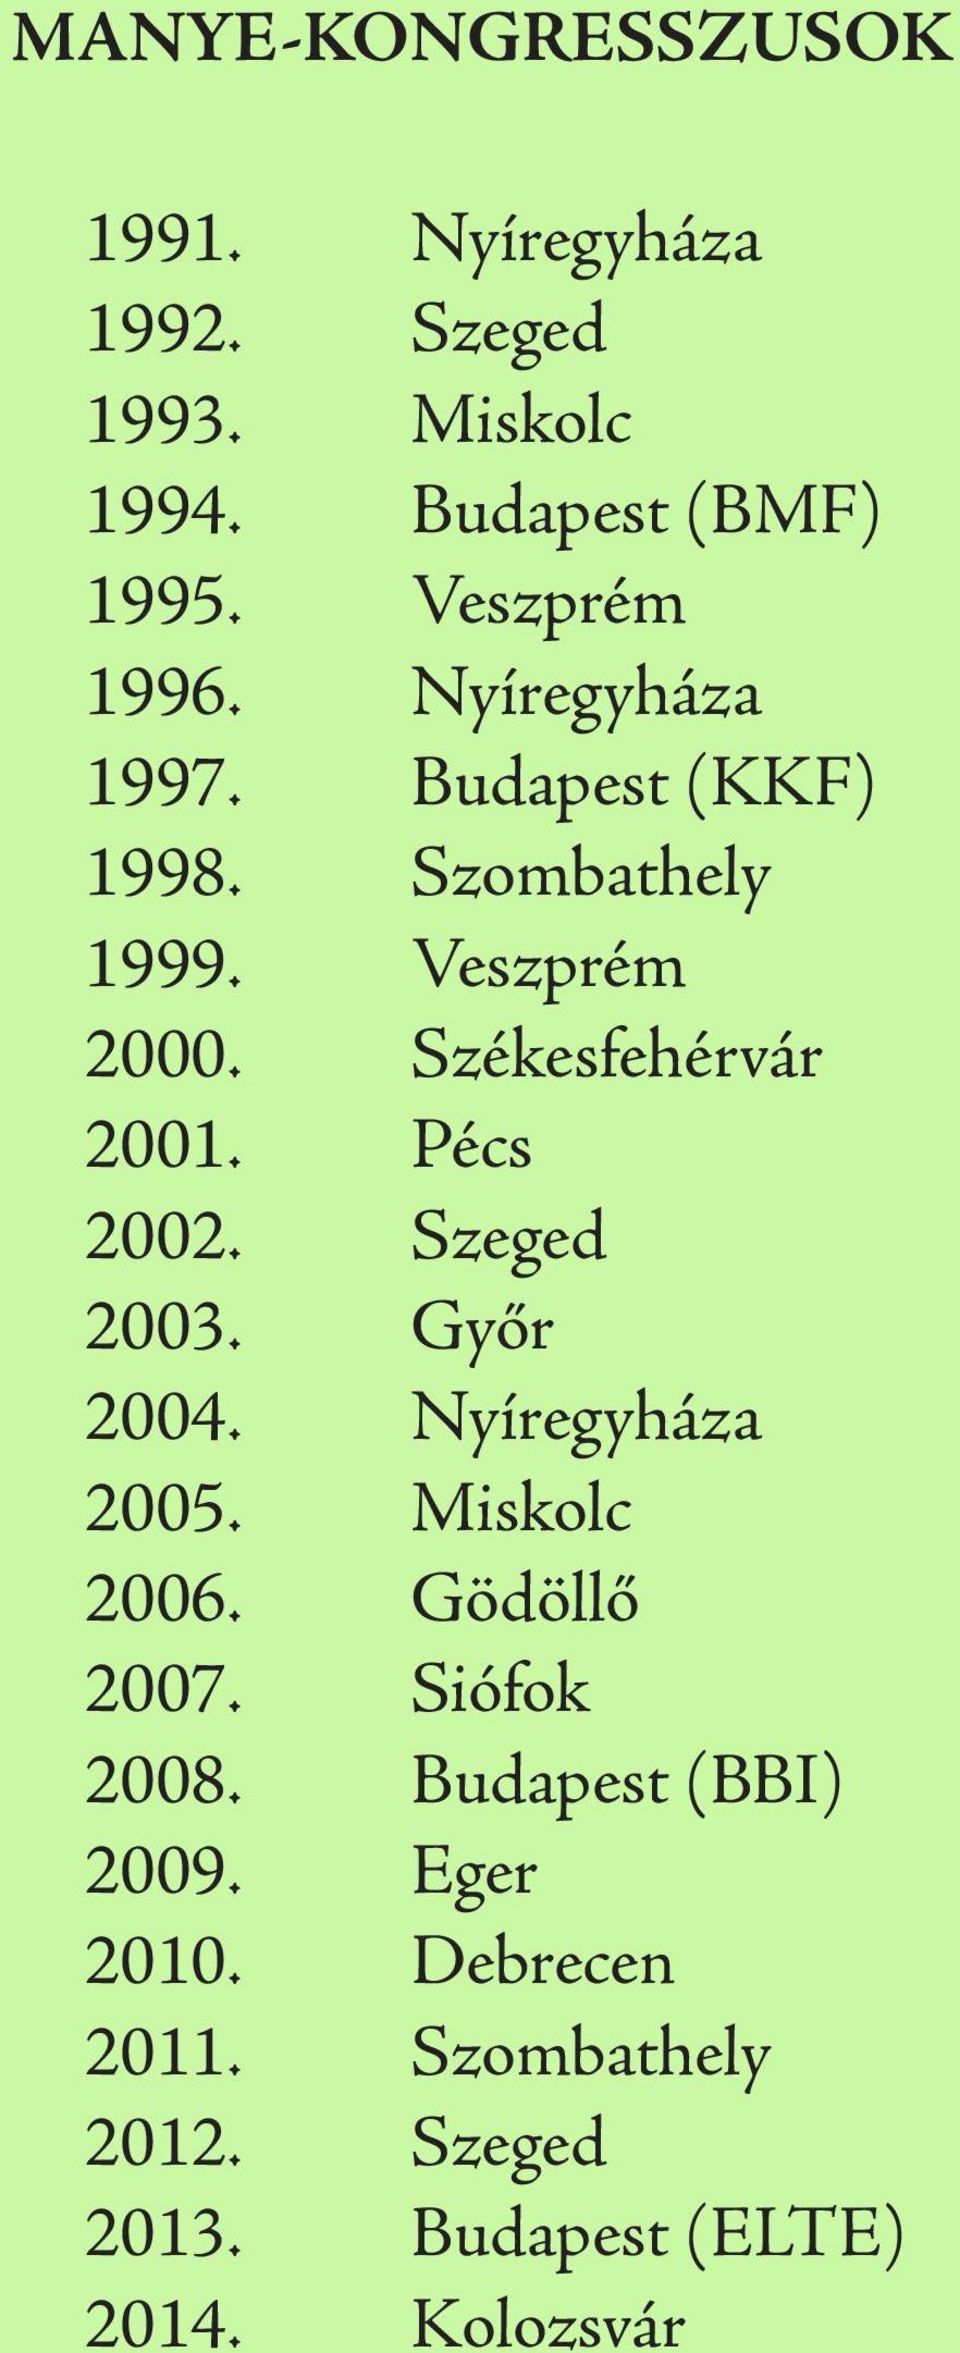 Székesfehérvár 2001. Pécs 2002. Szeged 2003. Győr 2004. Nyíregyháza 2005. Miskolc 2006. Gödöllő 2007.